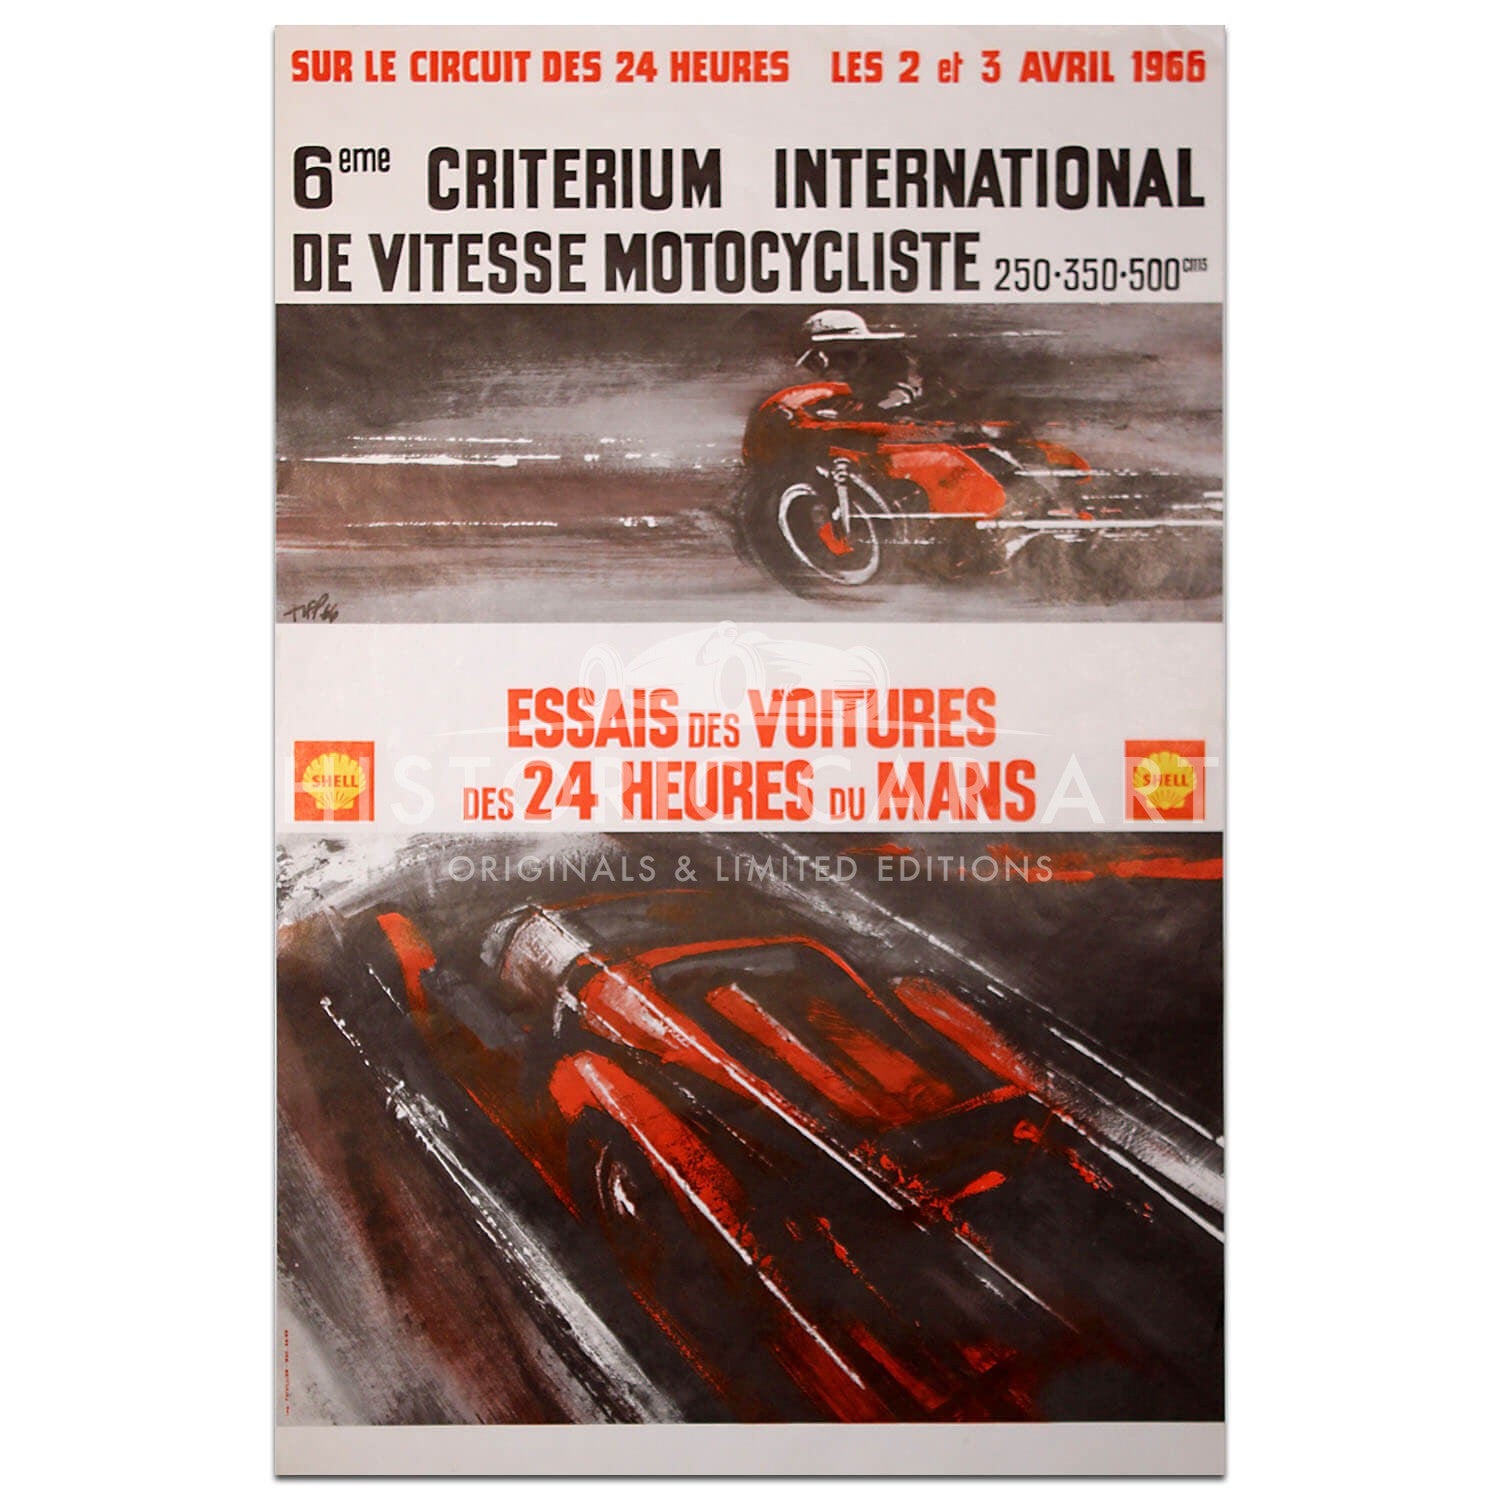 French | Le Mans 24 hours 1966 Essais (Practice) Original Poster